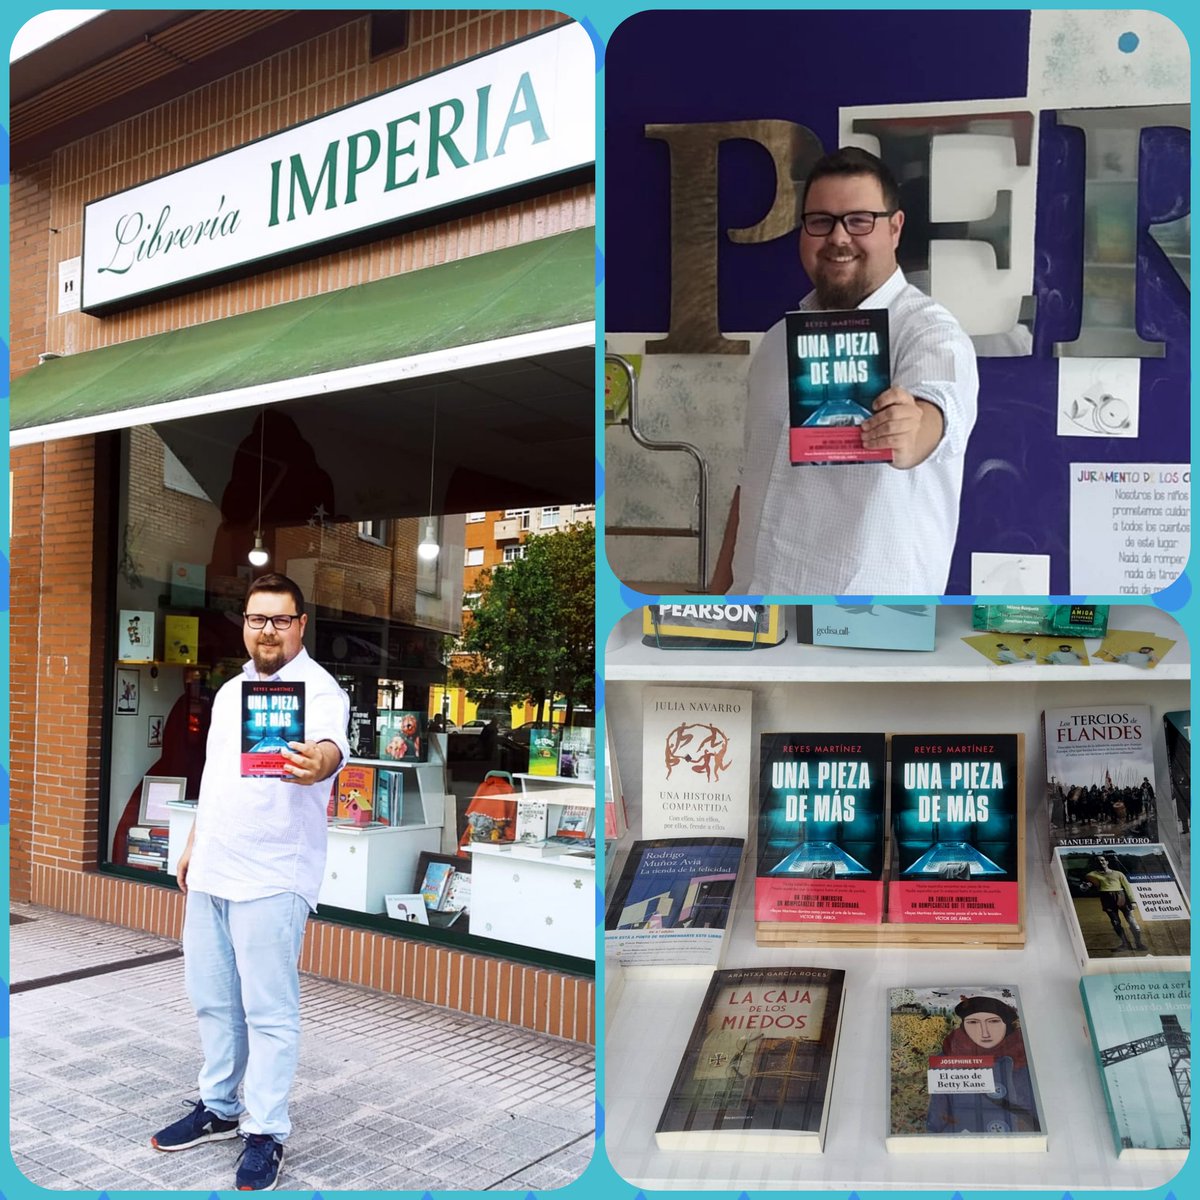 Librerías que suman. librería Imperia (Gijón)
@penguincrimen
@penguinlibros 
#novedadeditorial #NovedadesPenguin #NovelaNegra #unapiezademas